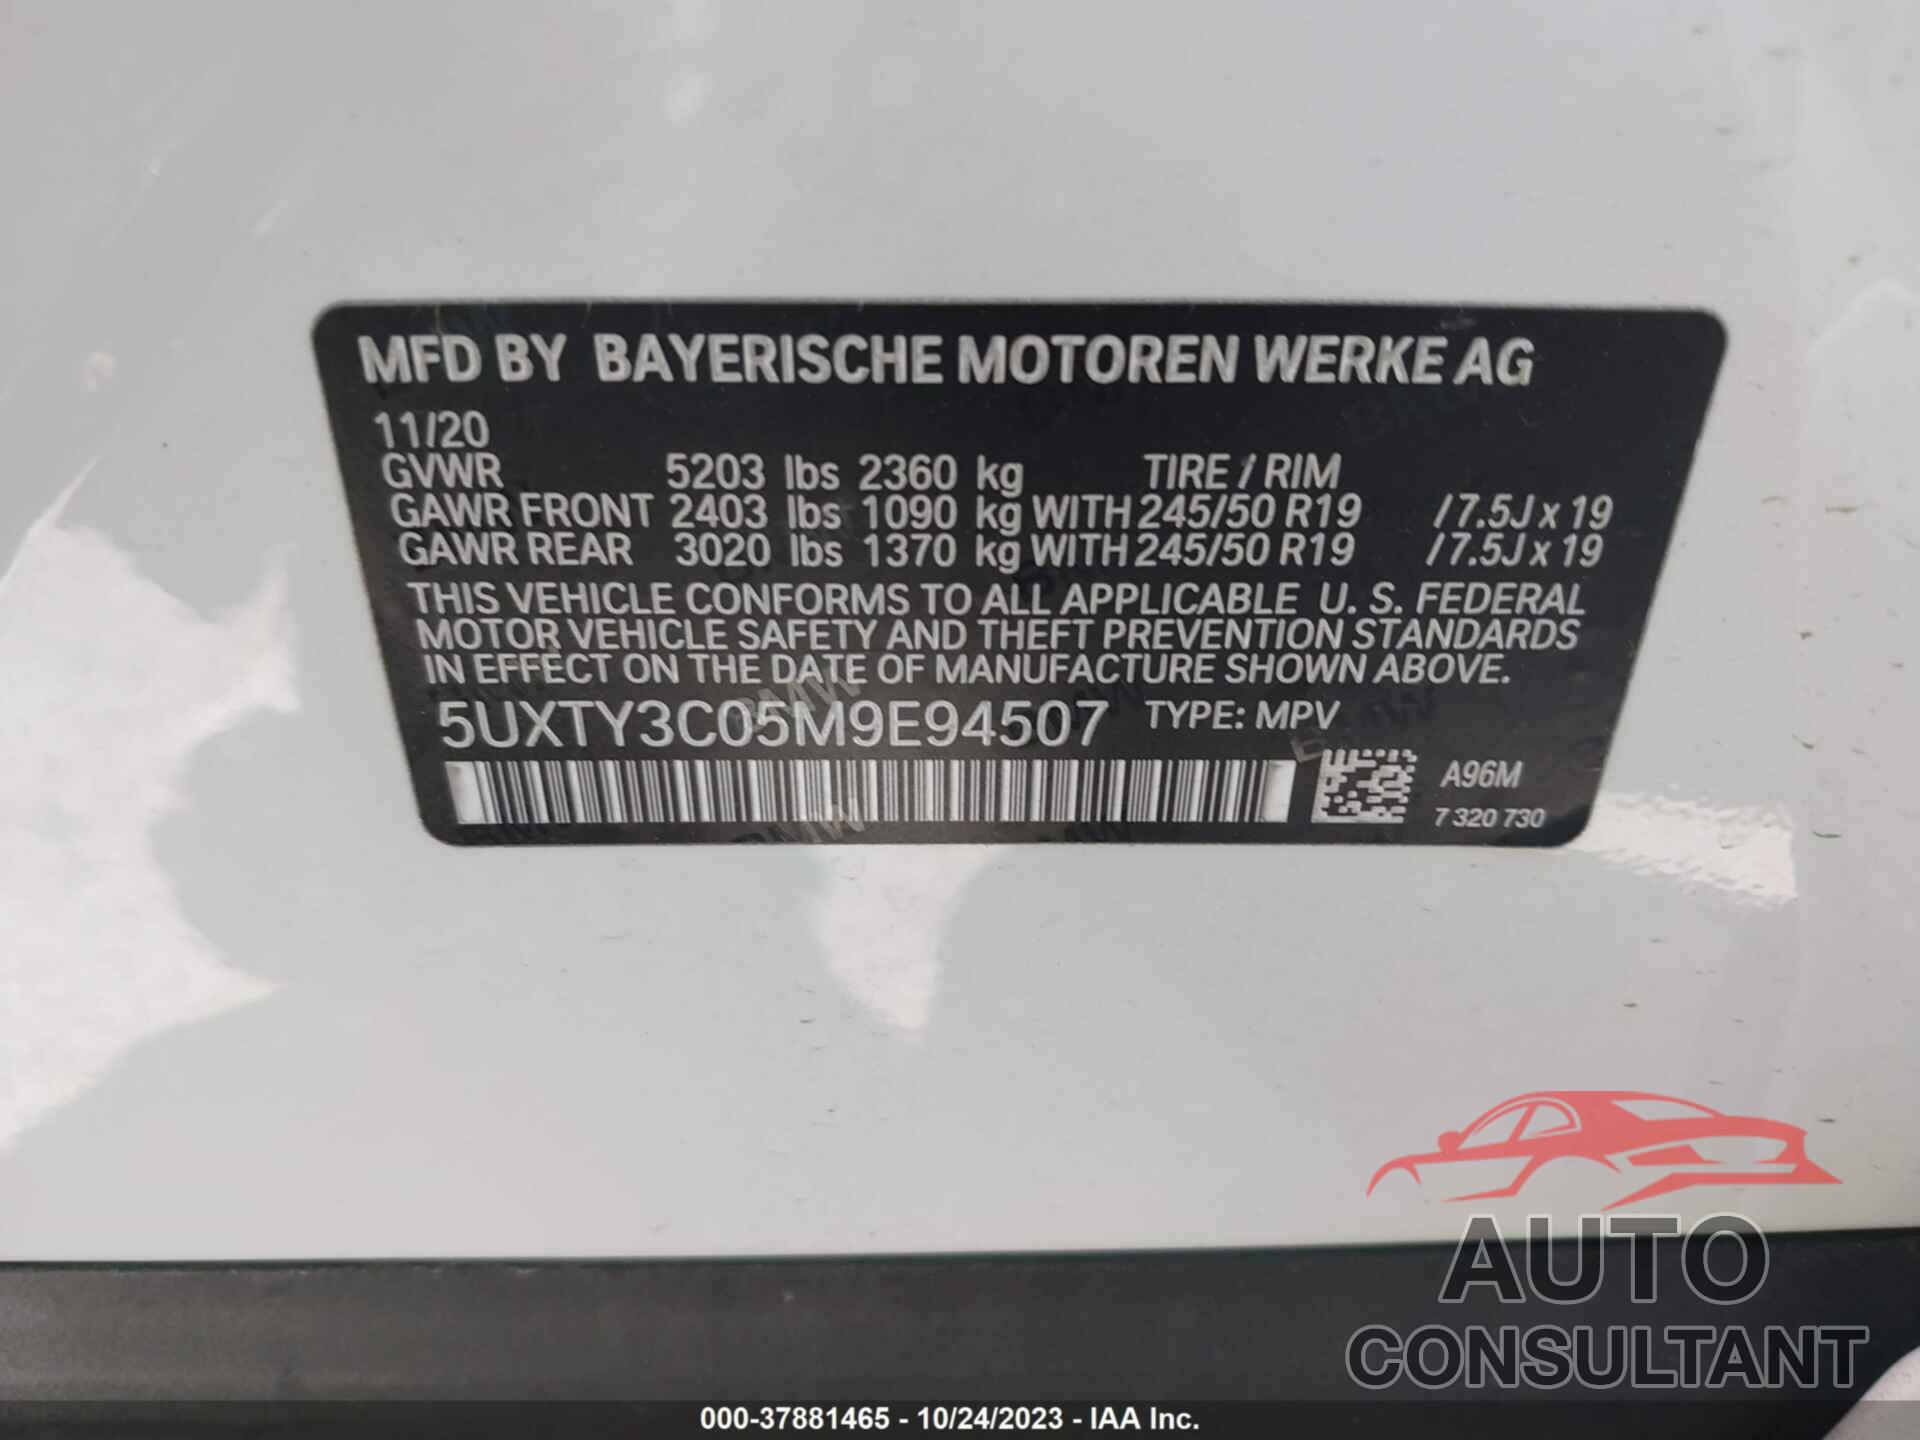 BMW X3 2021 - 5UXTY3C05M9E94507